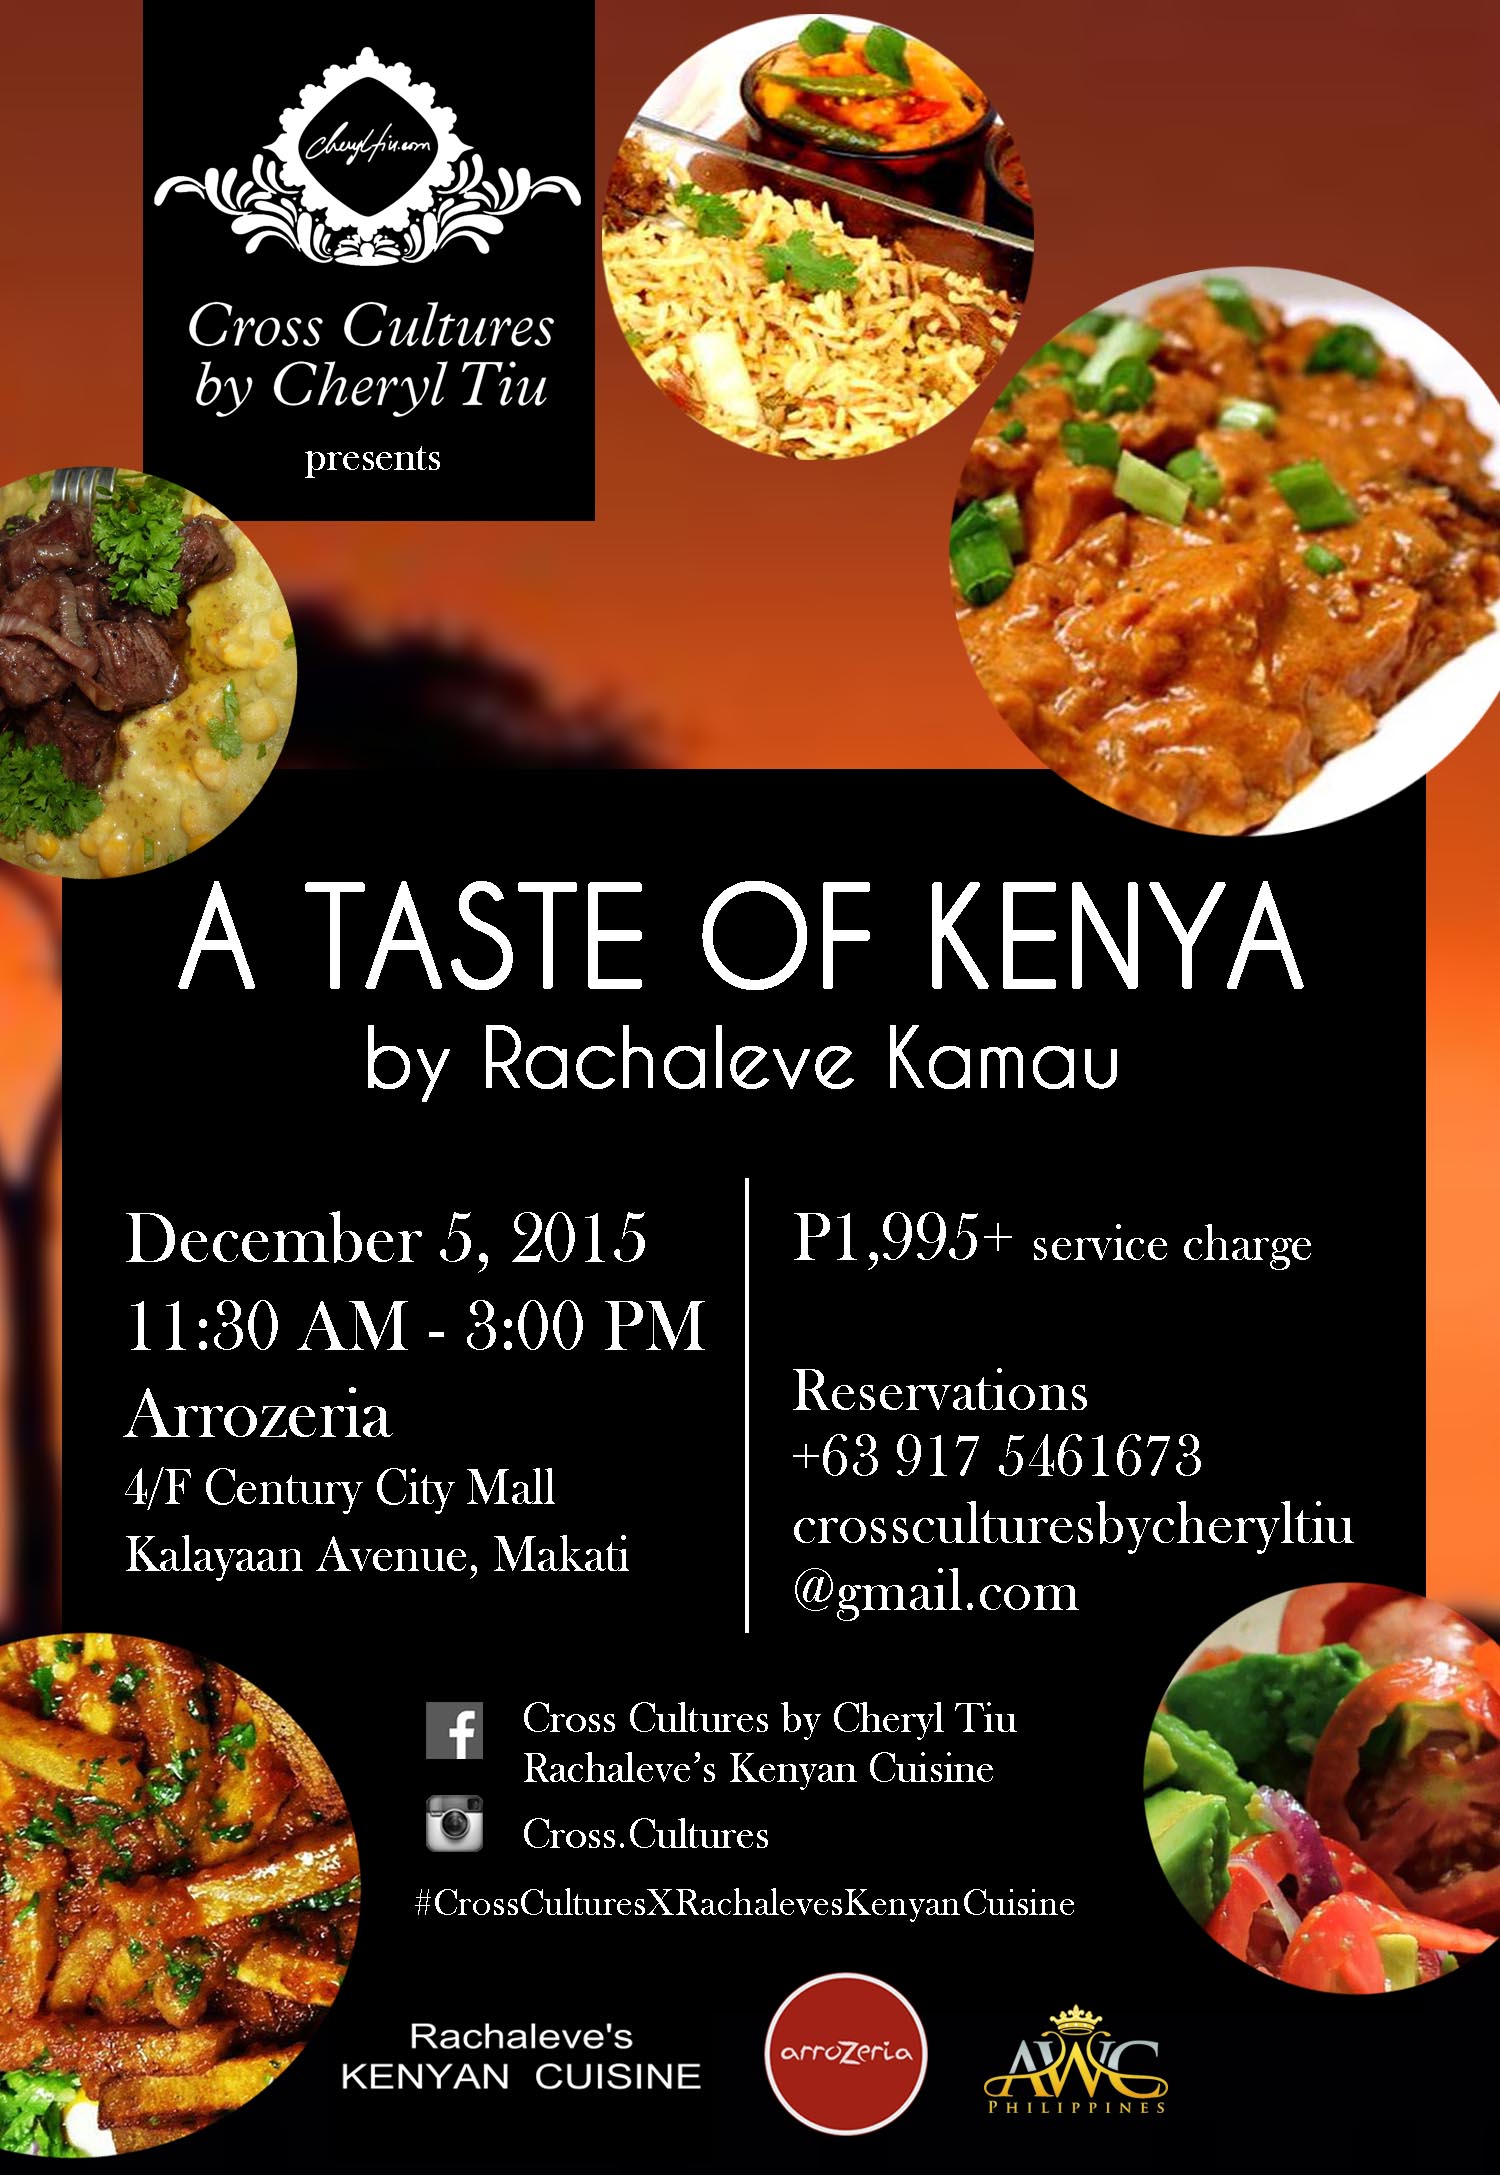 Cross Cultures Presents… A Taste of Kenya by Rachaleve Kamau